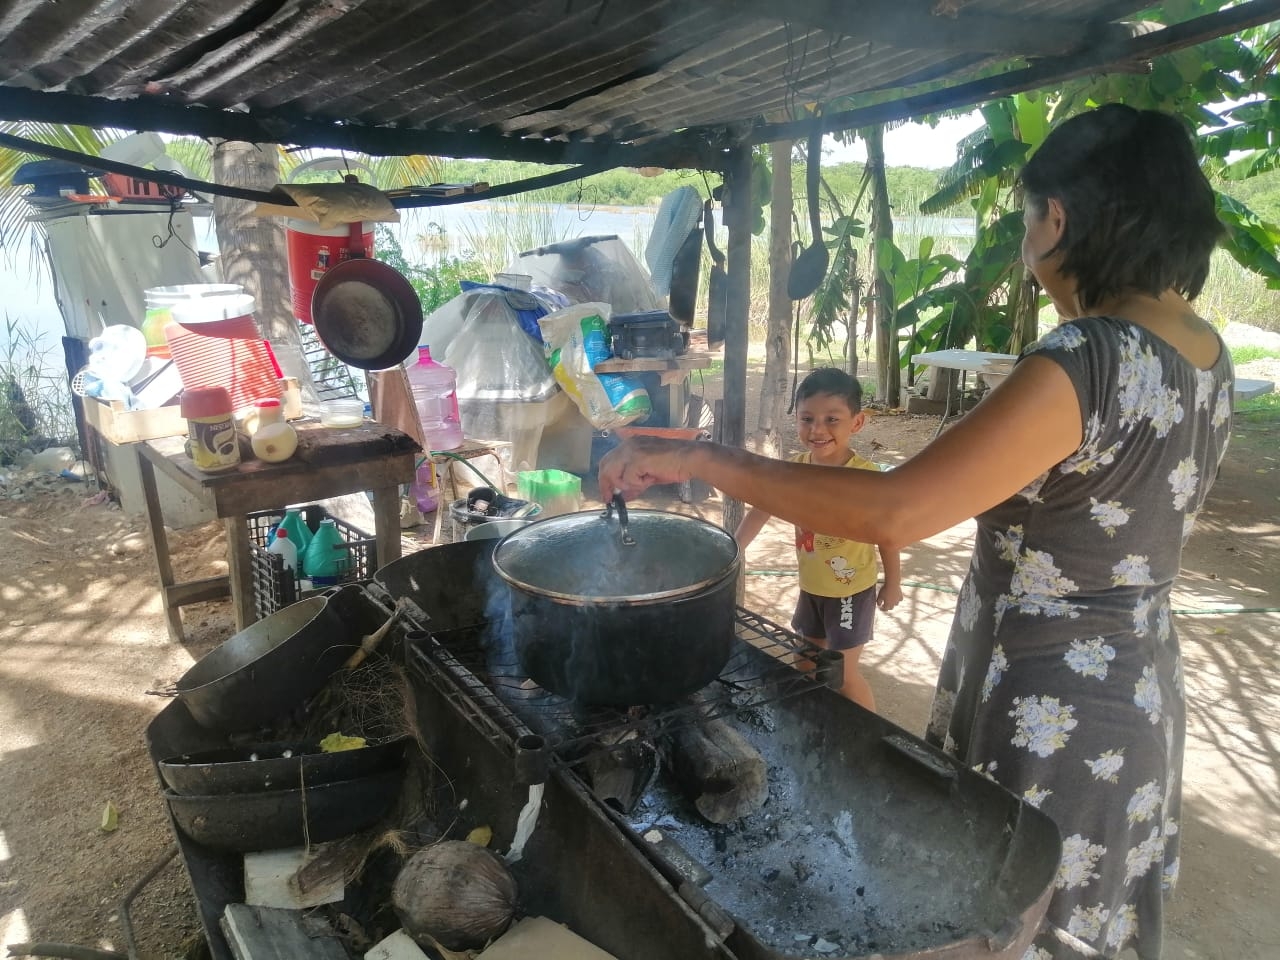 Entre la contaminación y el peligro, así la vida de una familia en Chetumal